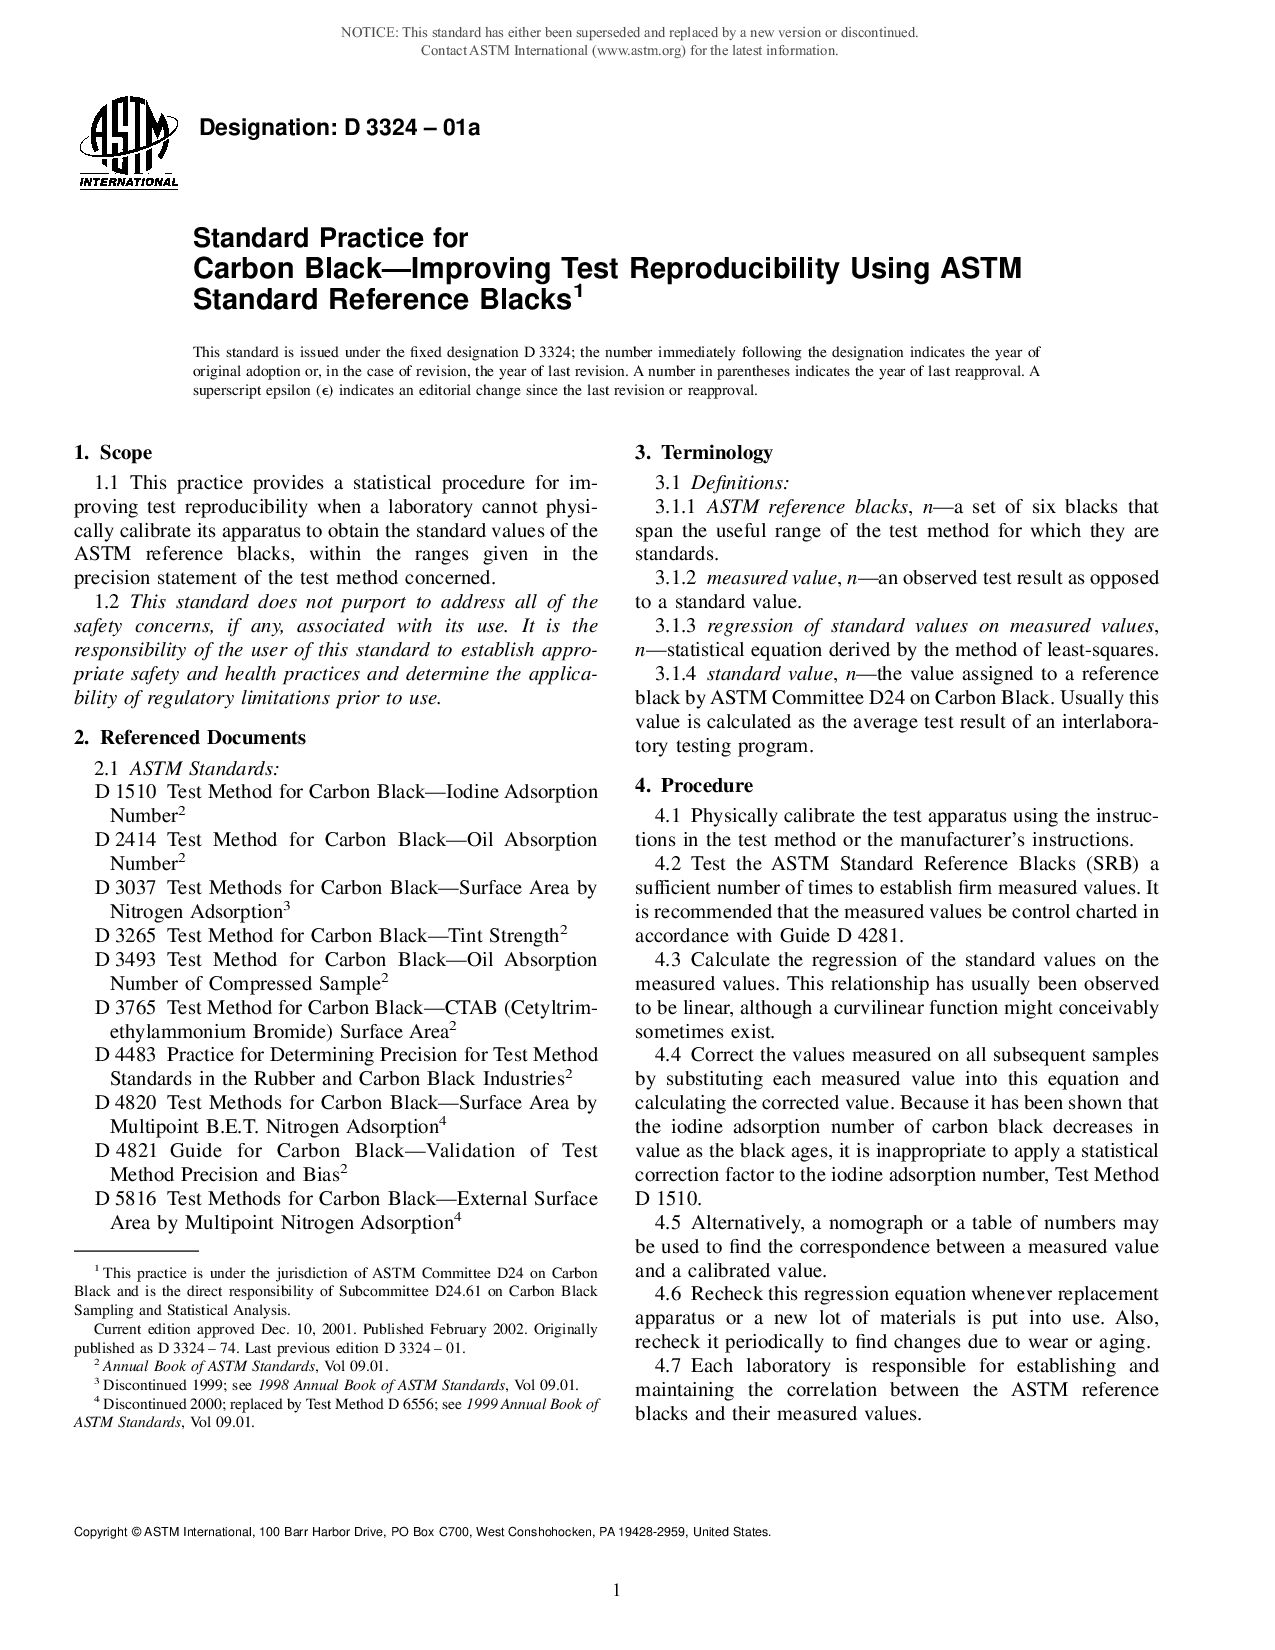 ASTM D3324-01a